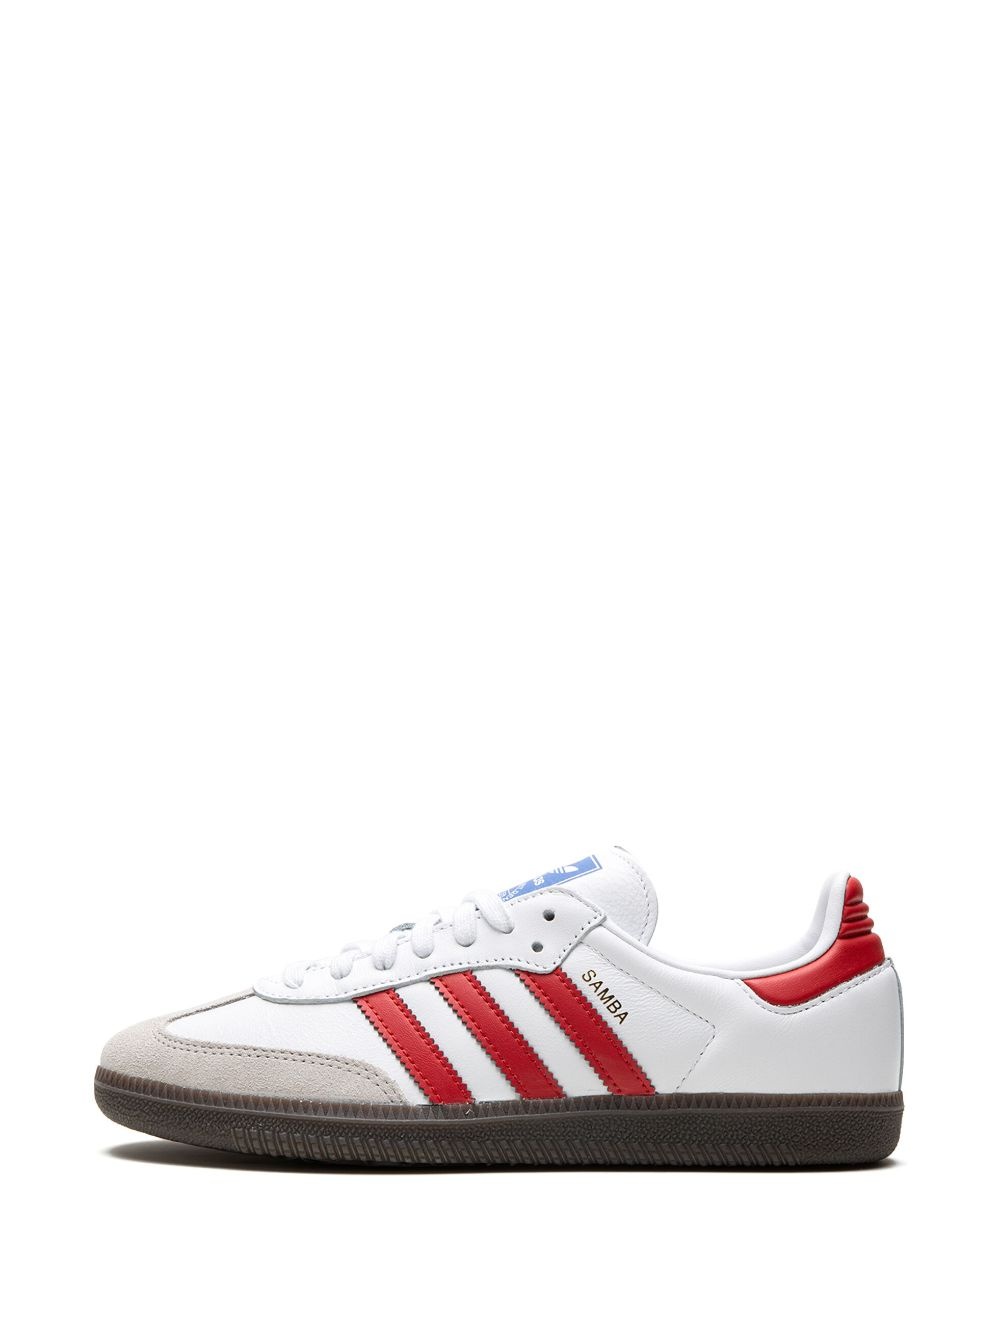 Samba OG "White/Red" sneakers - 5